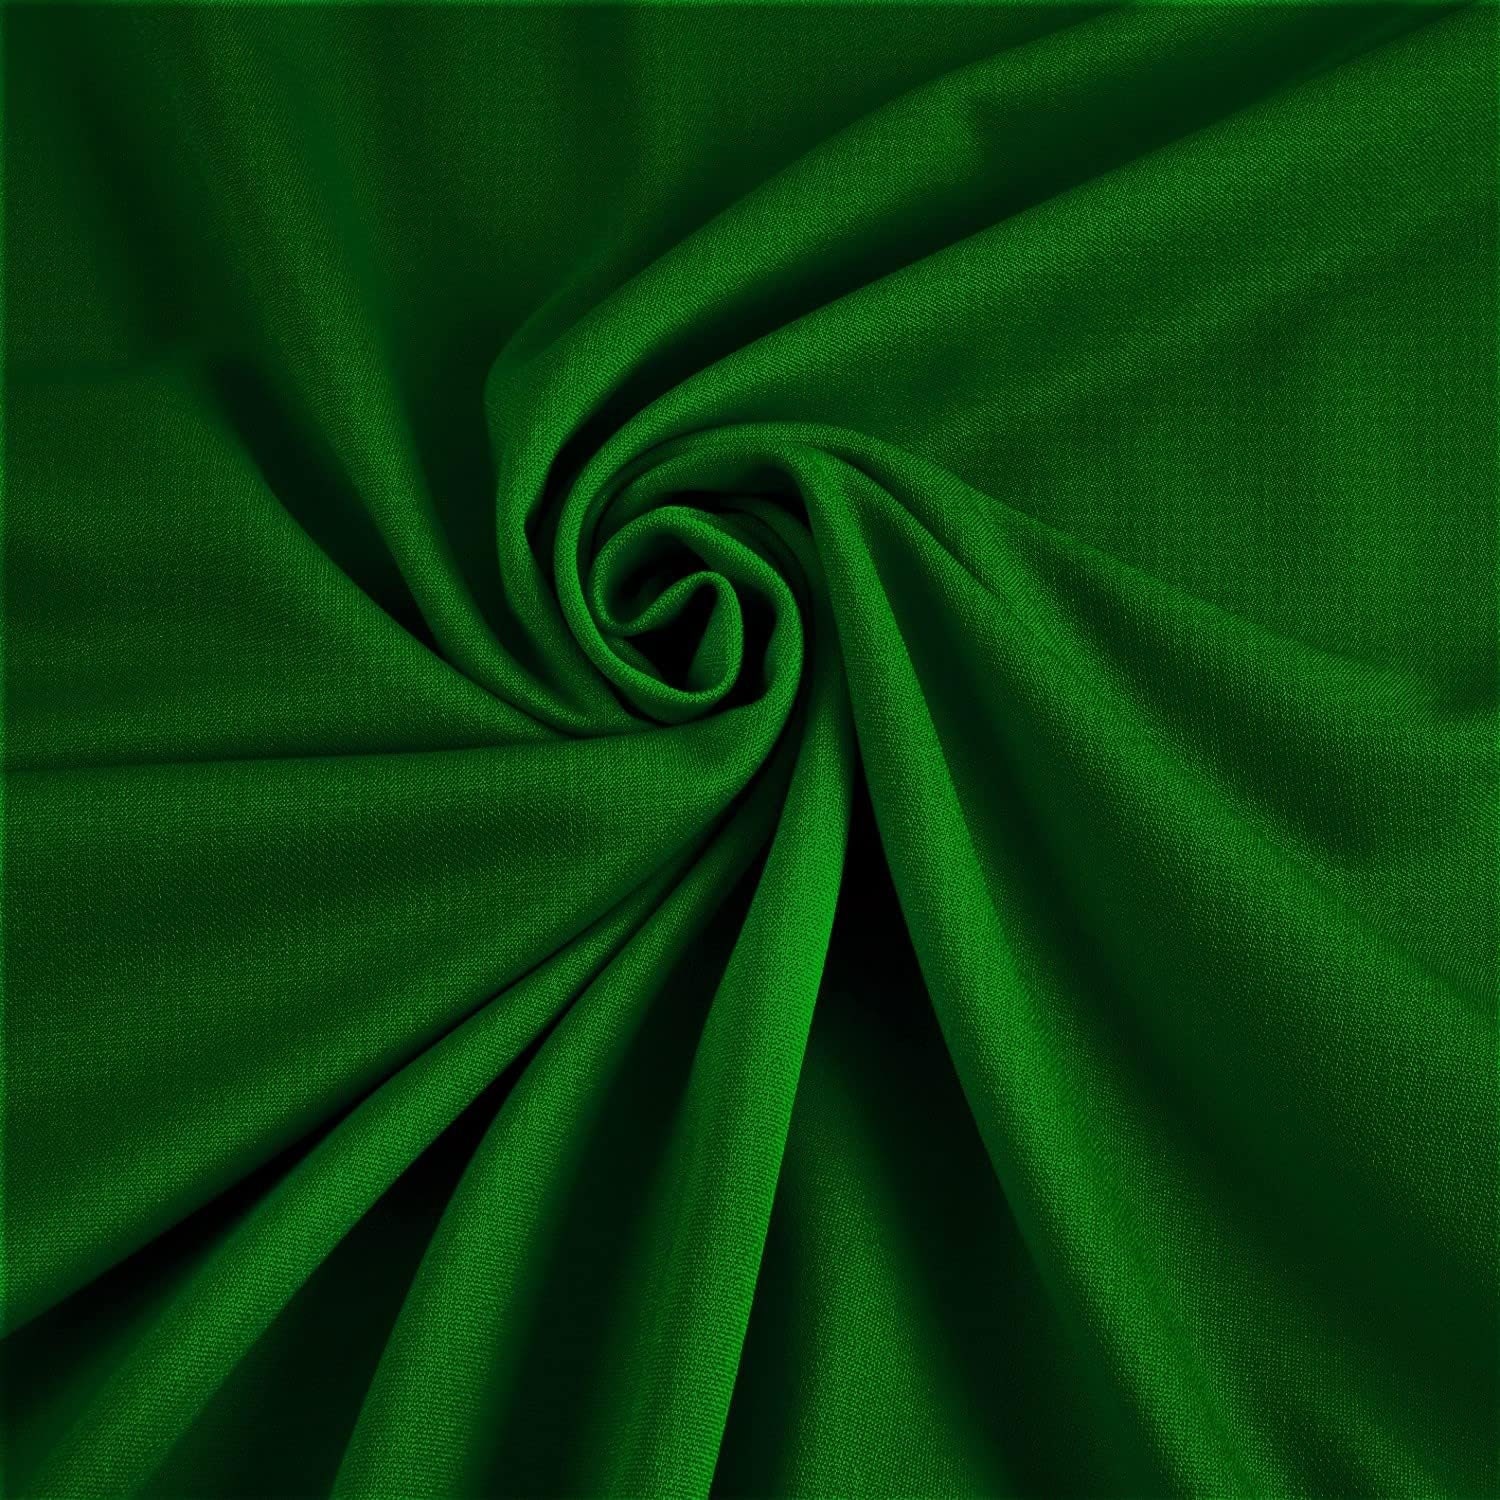 CV Linens 40 yds Satin Fabric Roll - Emerald Green